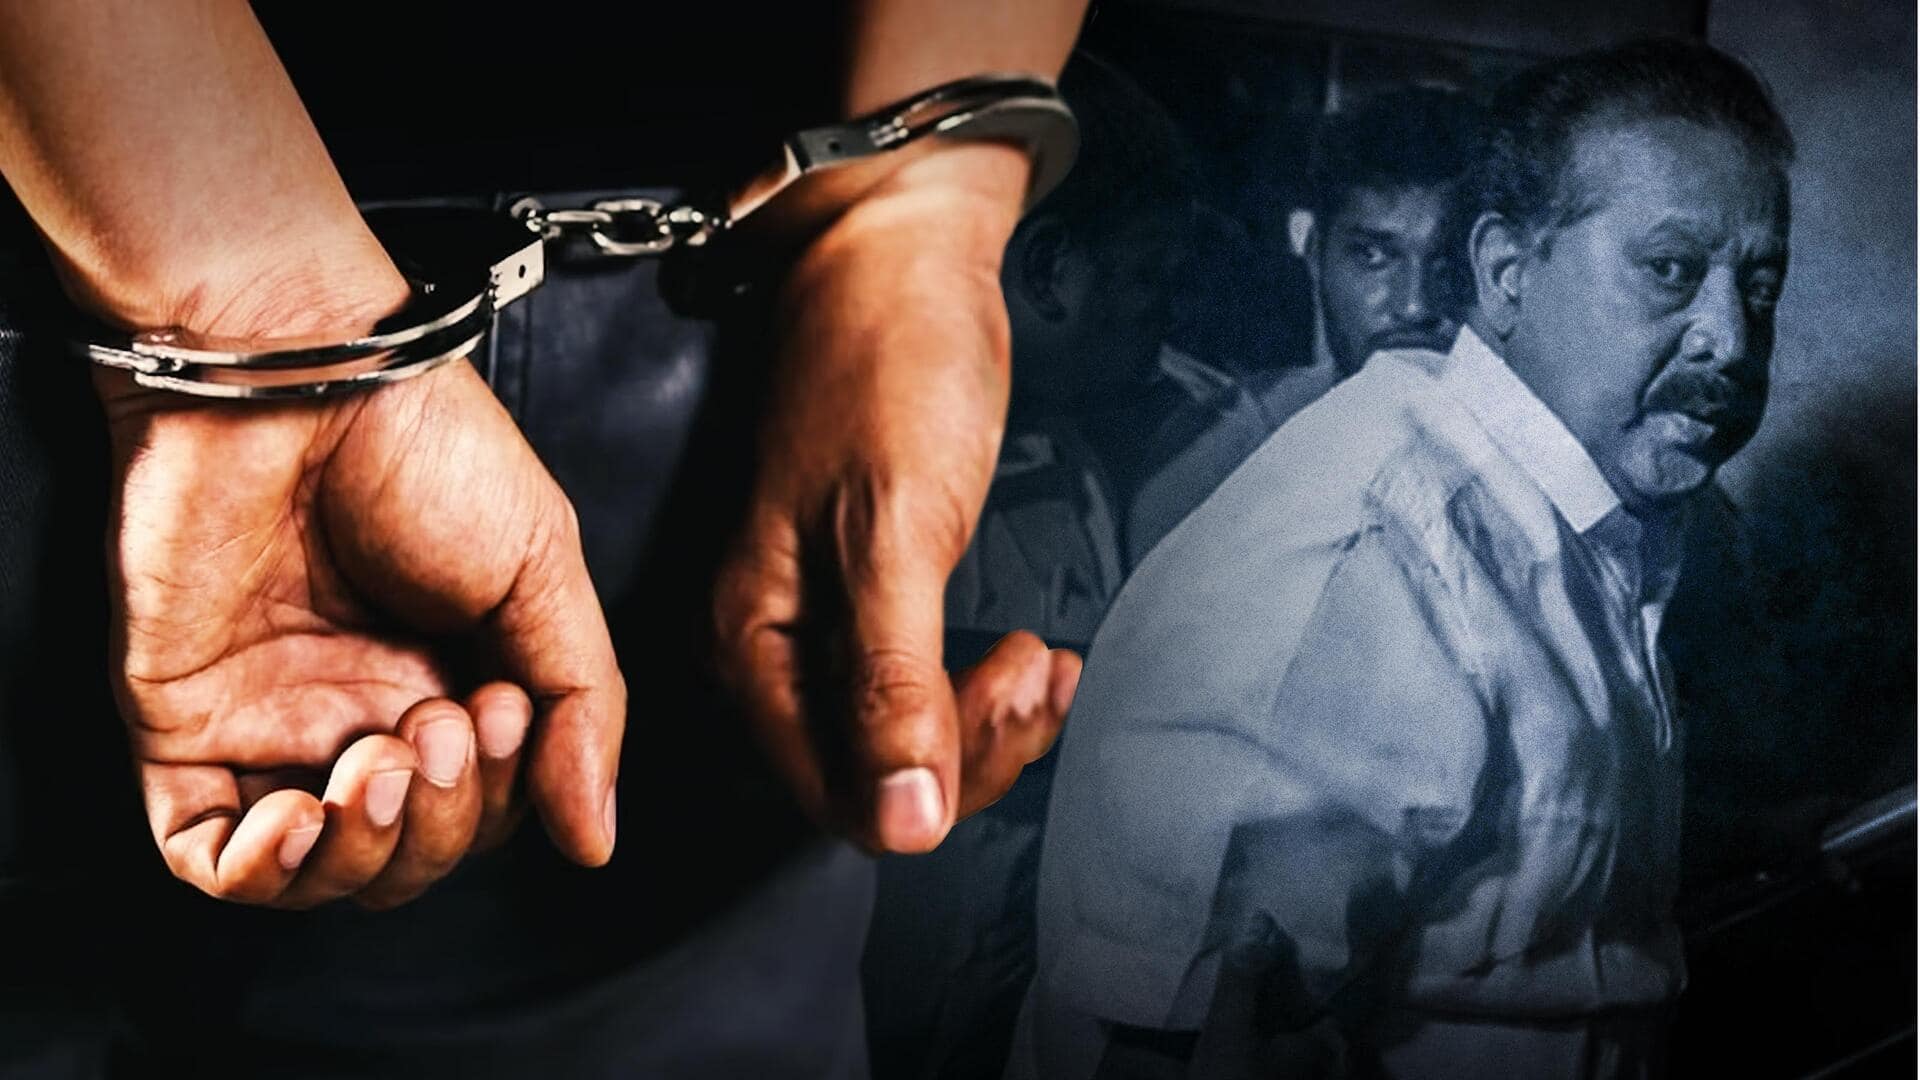 तमिलनाडु: उच्च शिक्षा मंत्री पोनमुडी को भ्रष्टाचार मामले में 3 साल की सजा, विधायकी पर खतरा